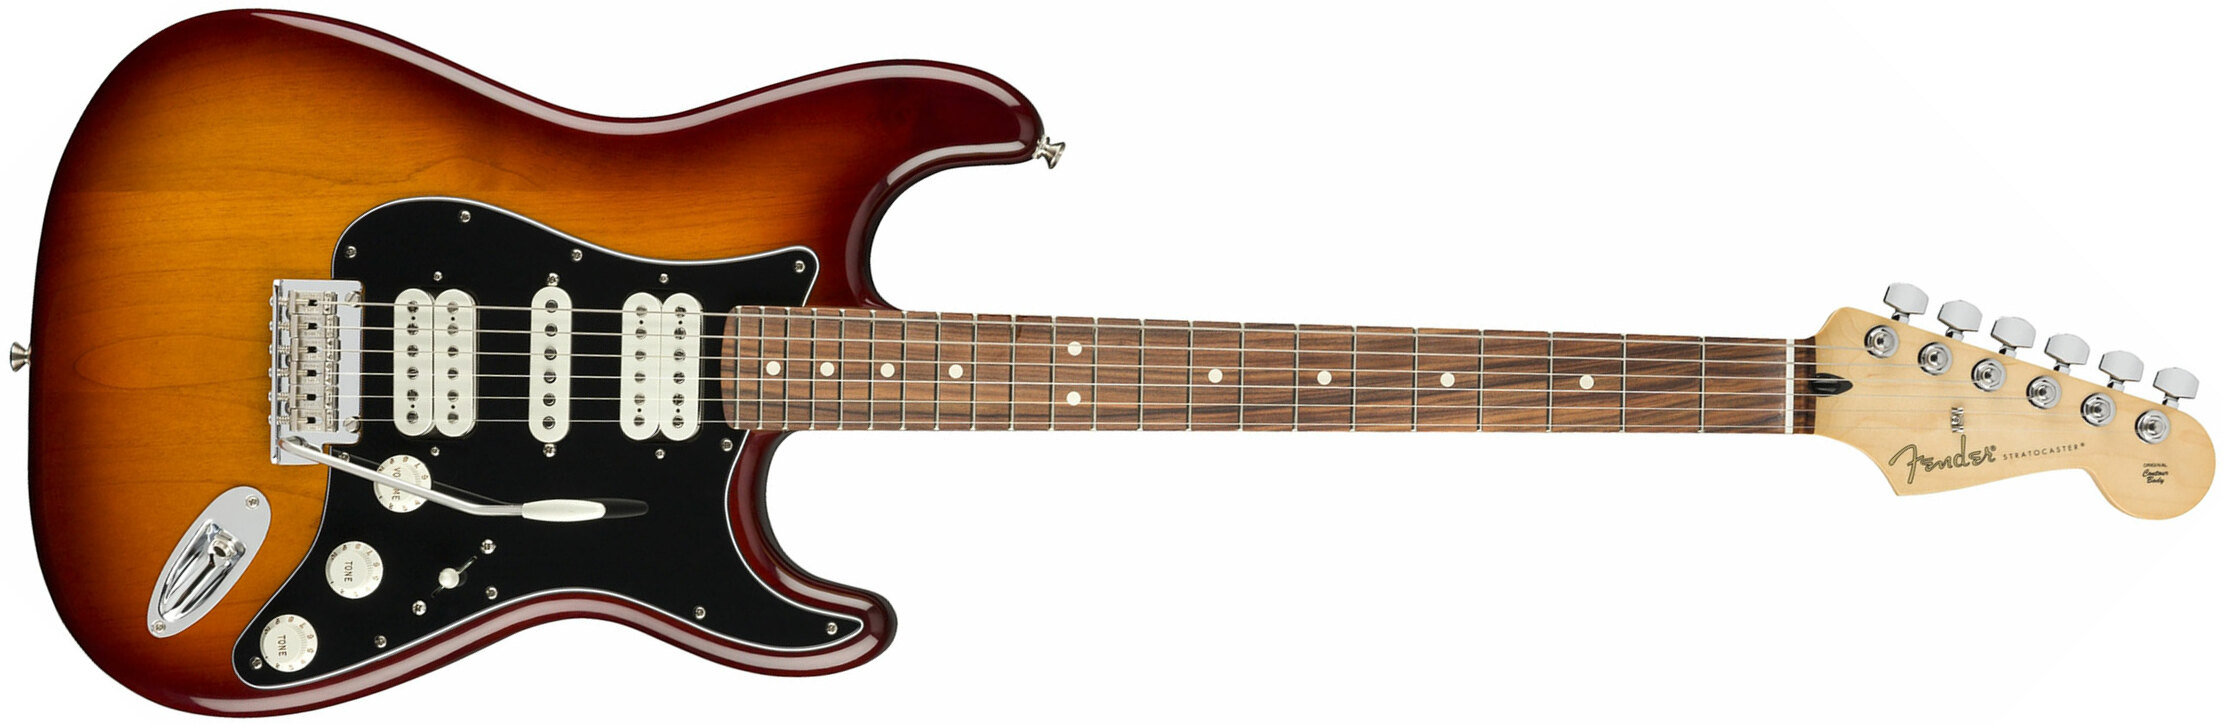 Fender Strat Player Mex Hsh Pf - Tobacco Burst - Guitare Électrique Forme Str - Main picture